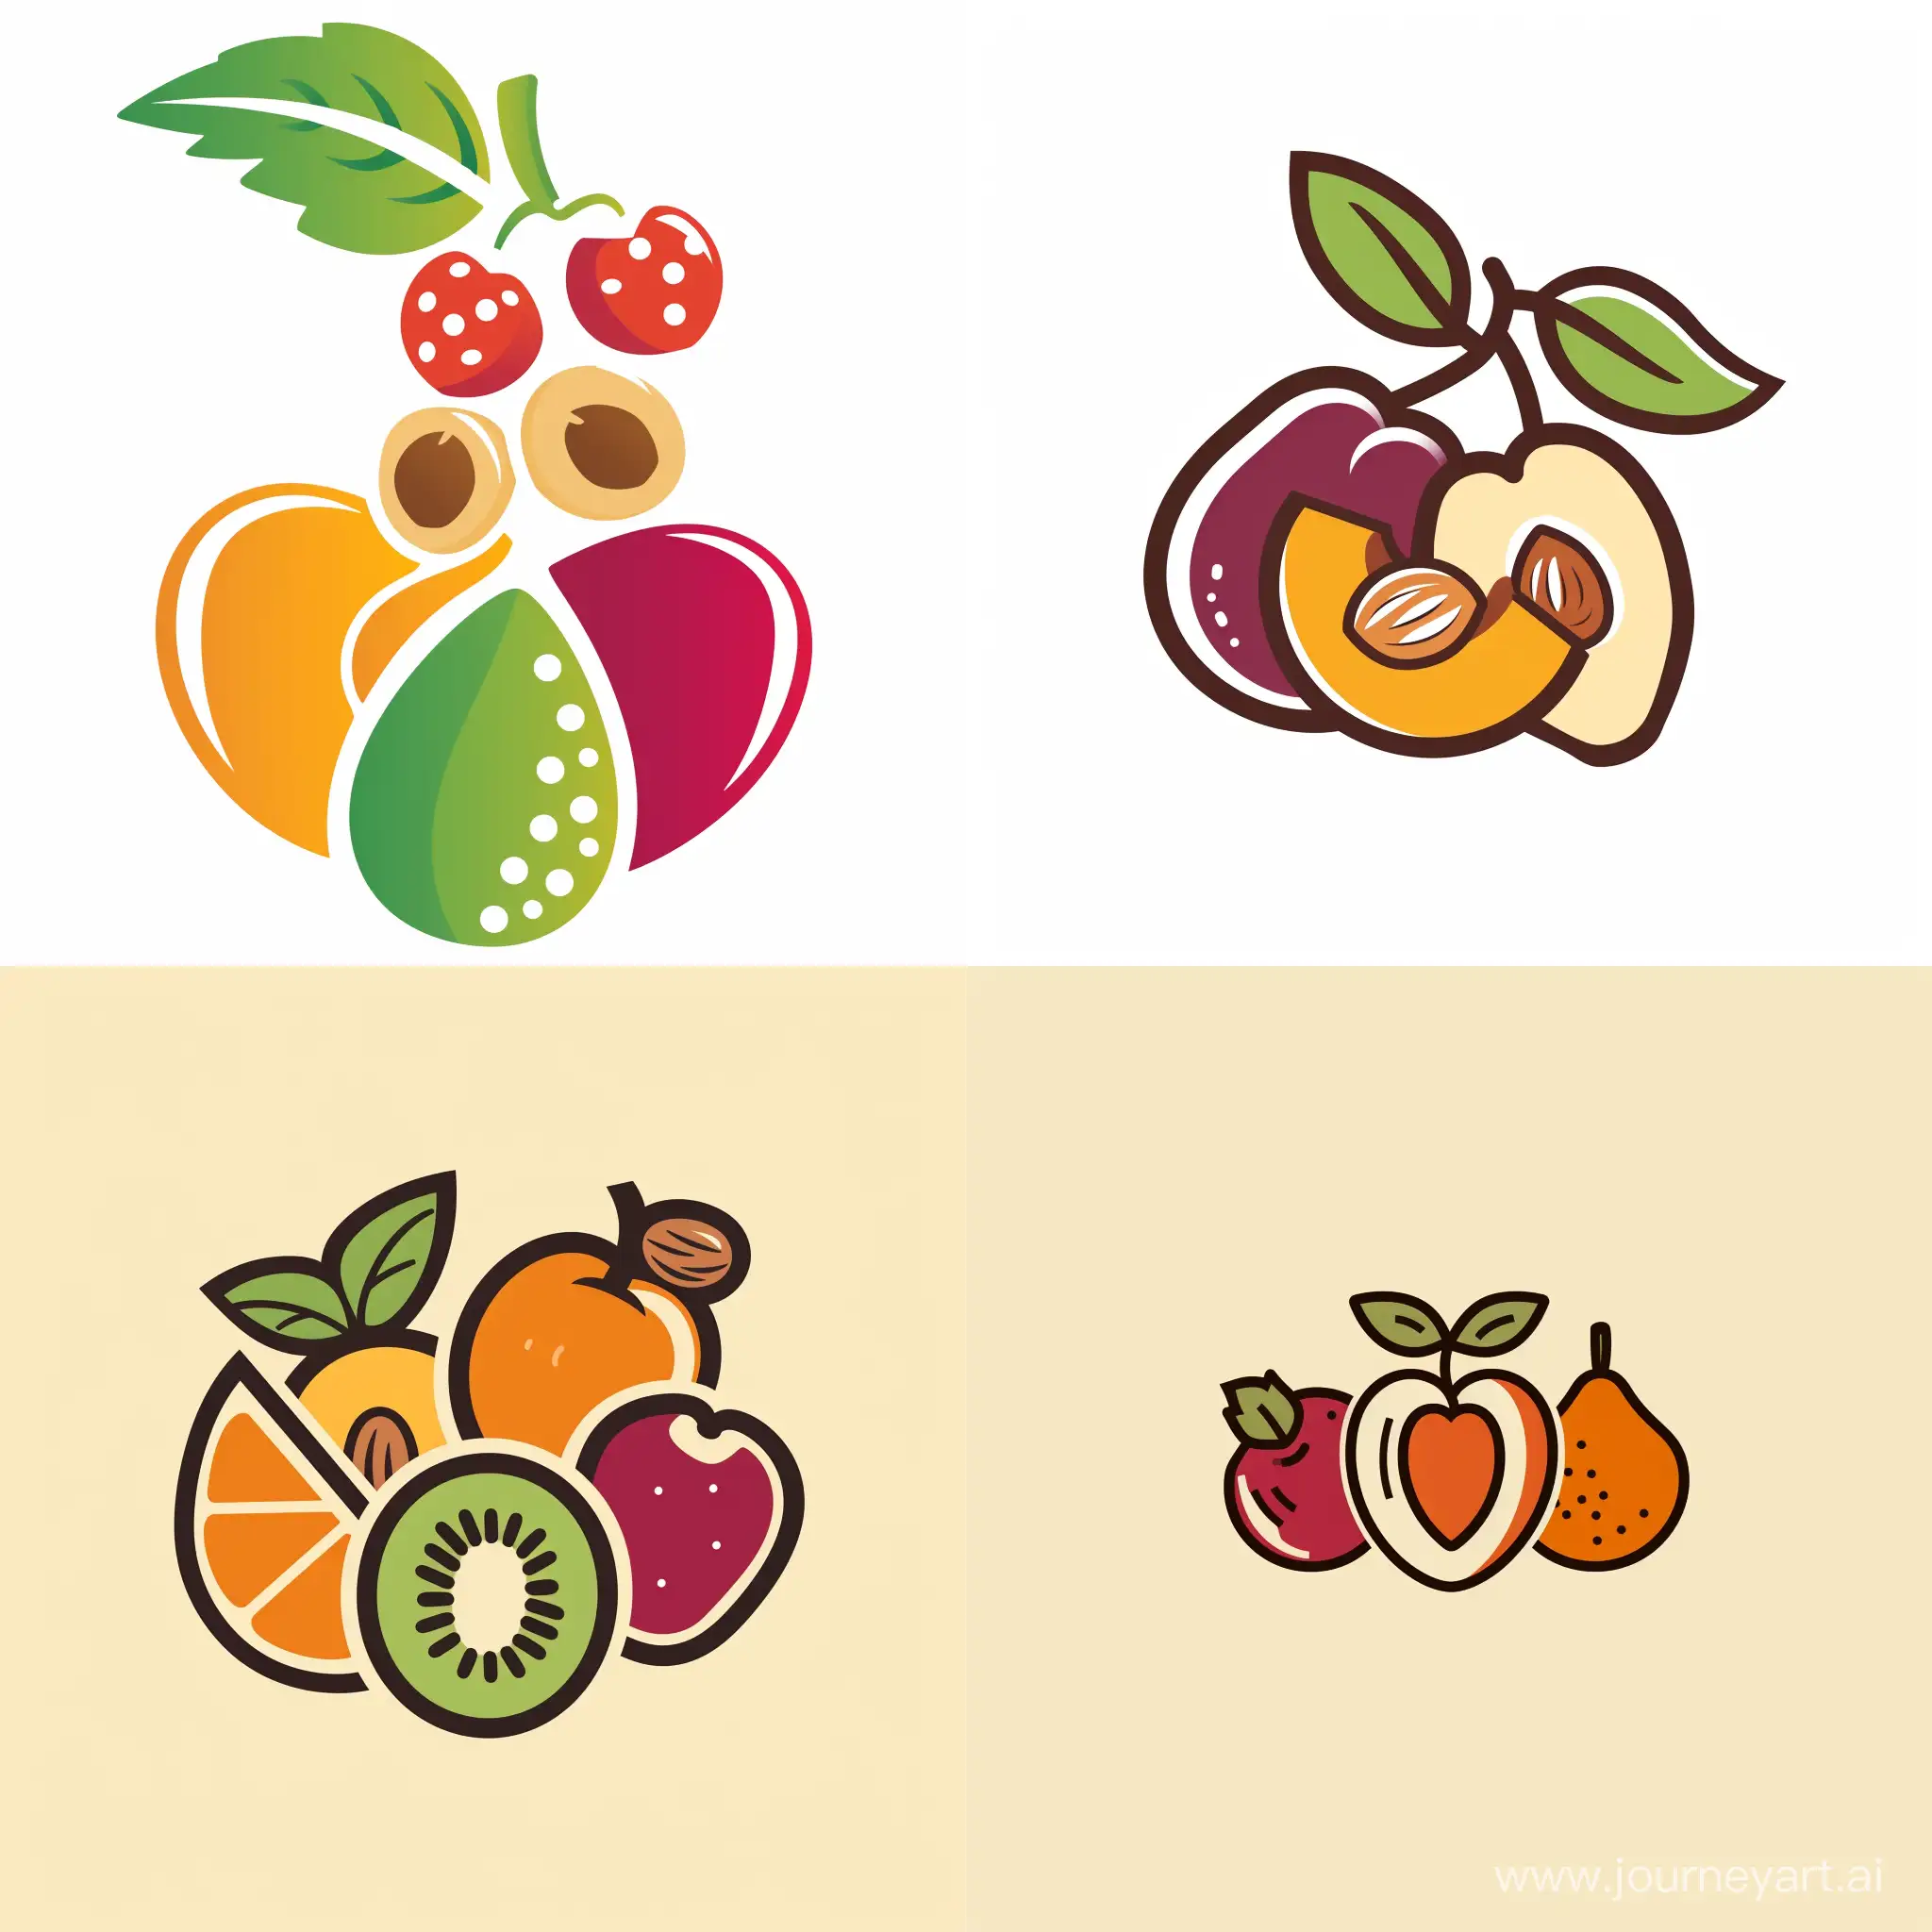  Разработать логотип для бизнеса, занимающейся полезными сладостями (фрукты, орехи)